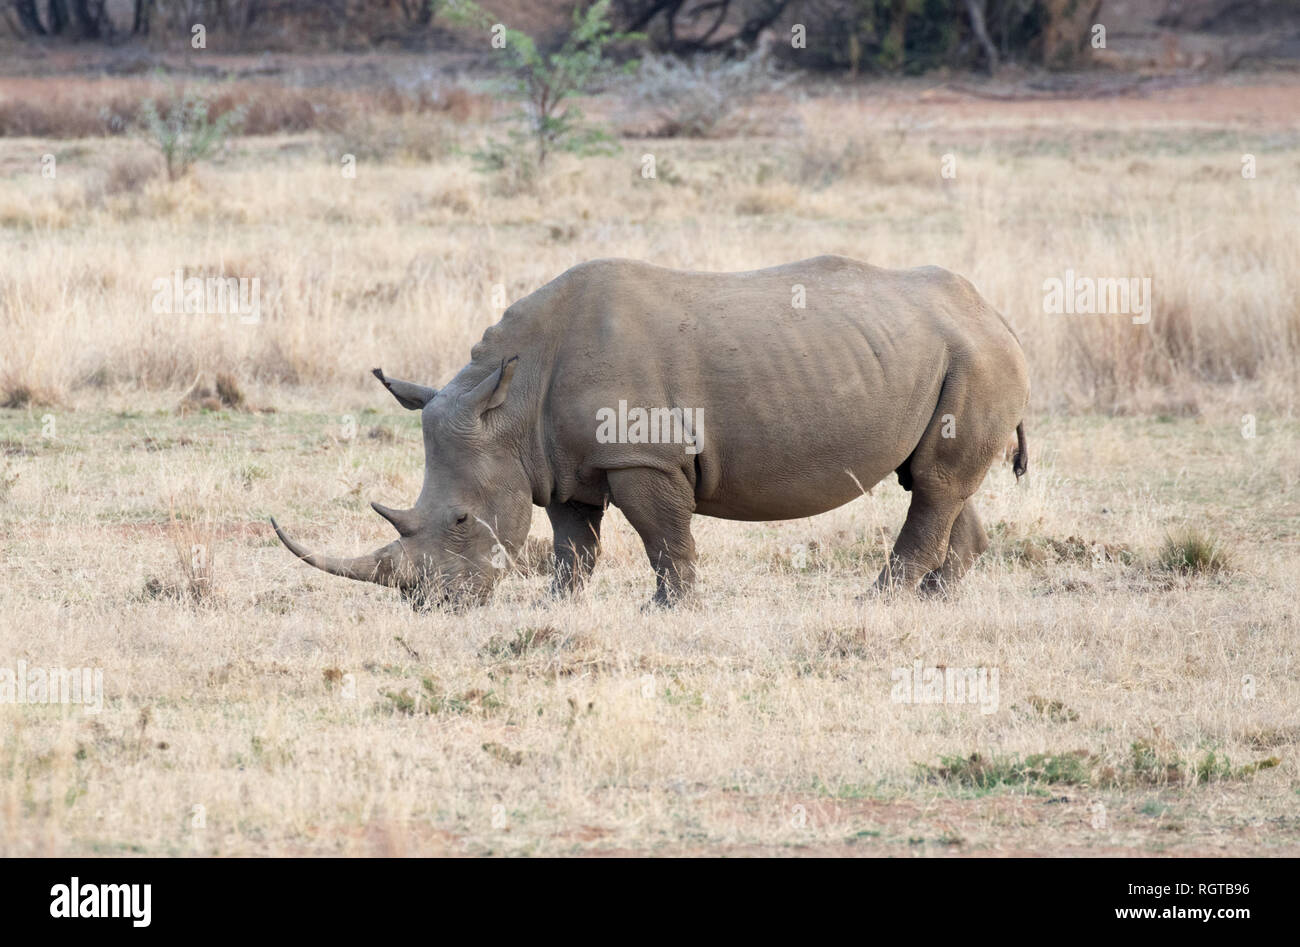 White Rhinoceros (Ceratotherium simum) Stock Photo